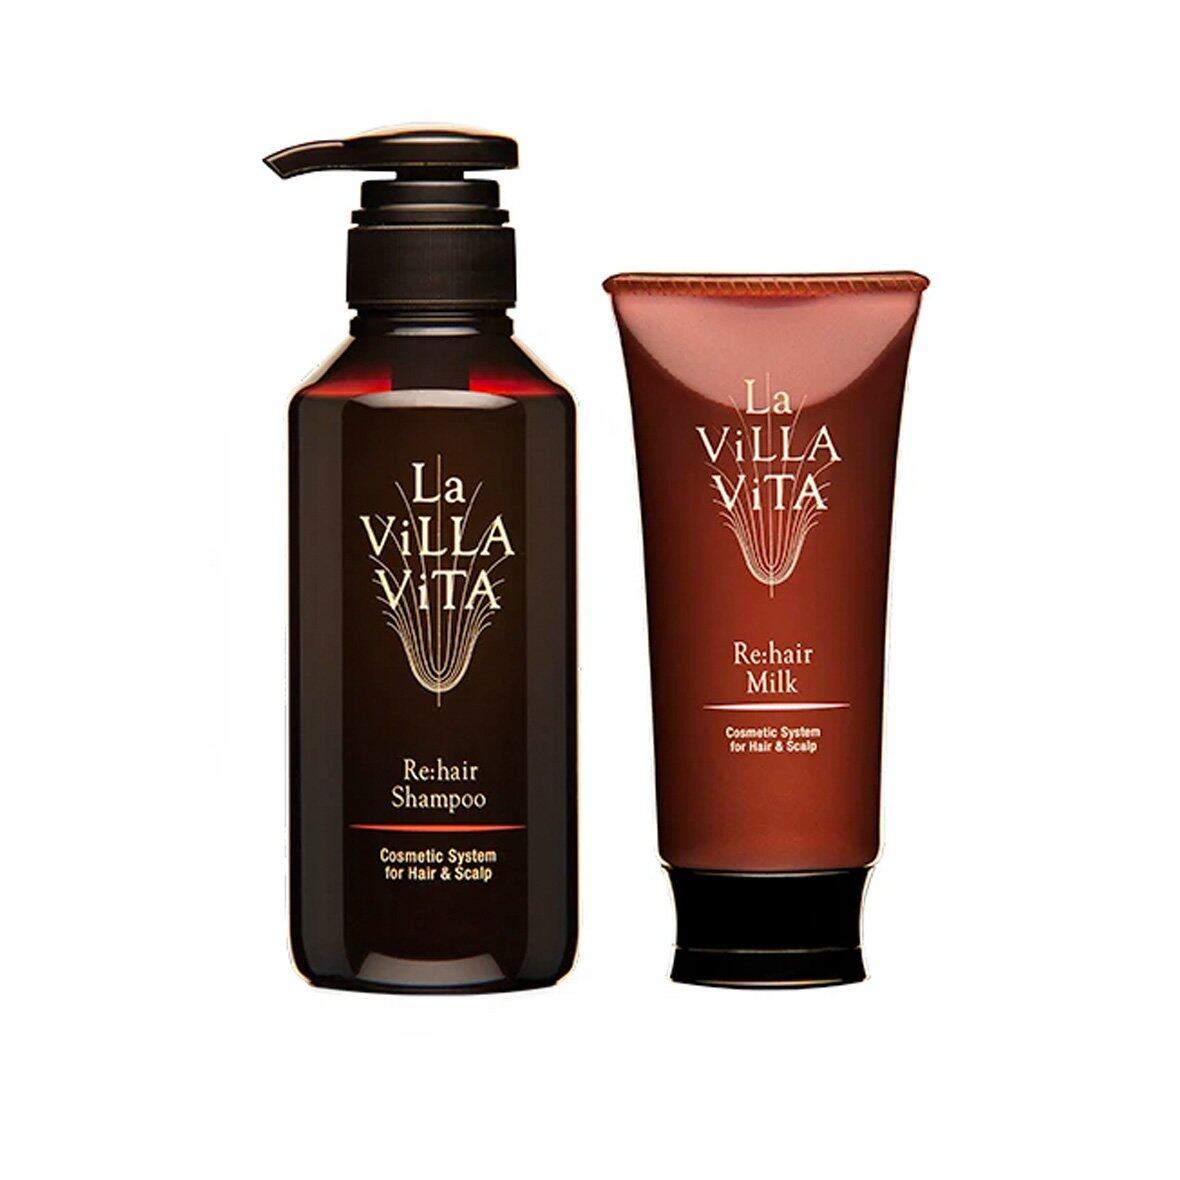 La Villa Vita 髮梢頭皮套裝